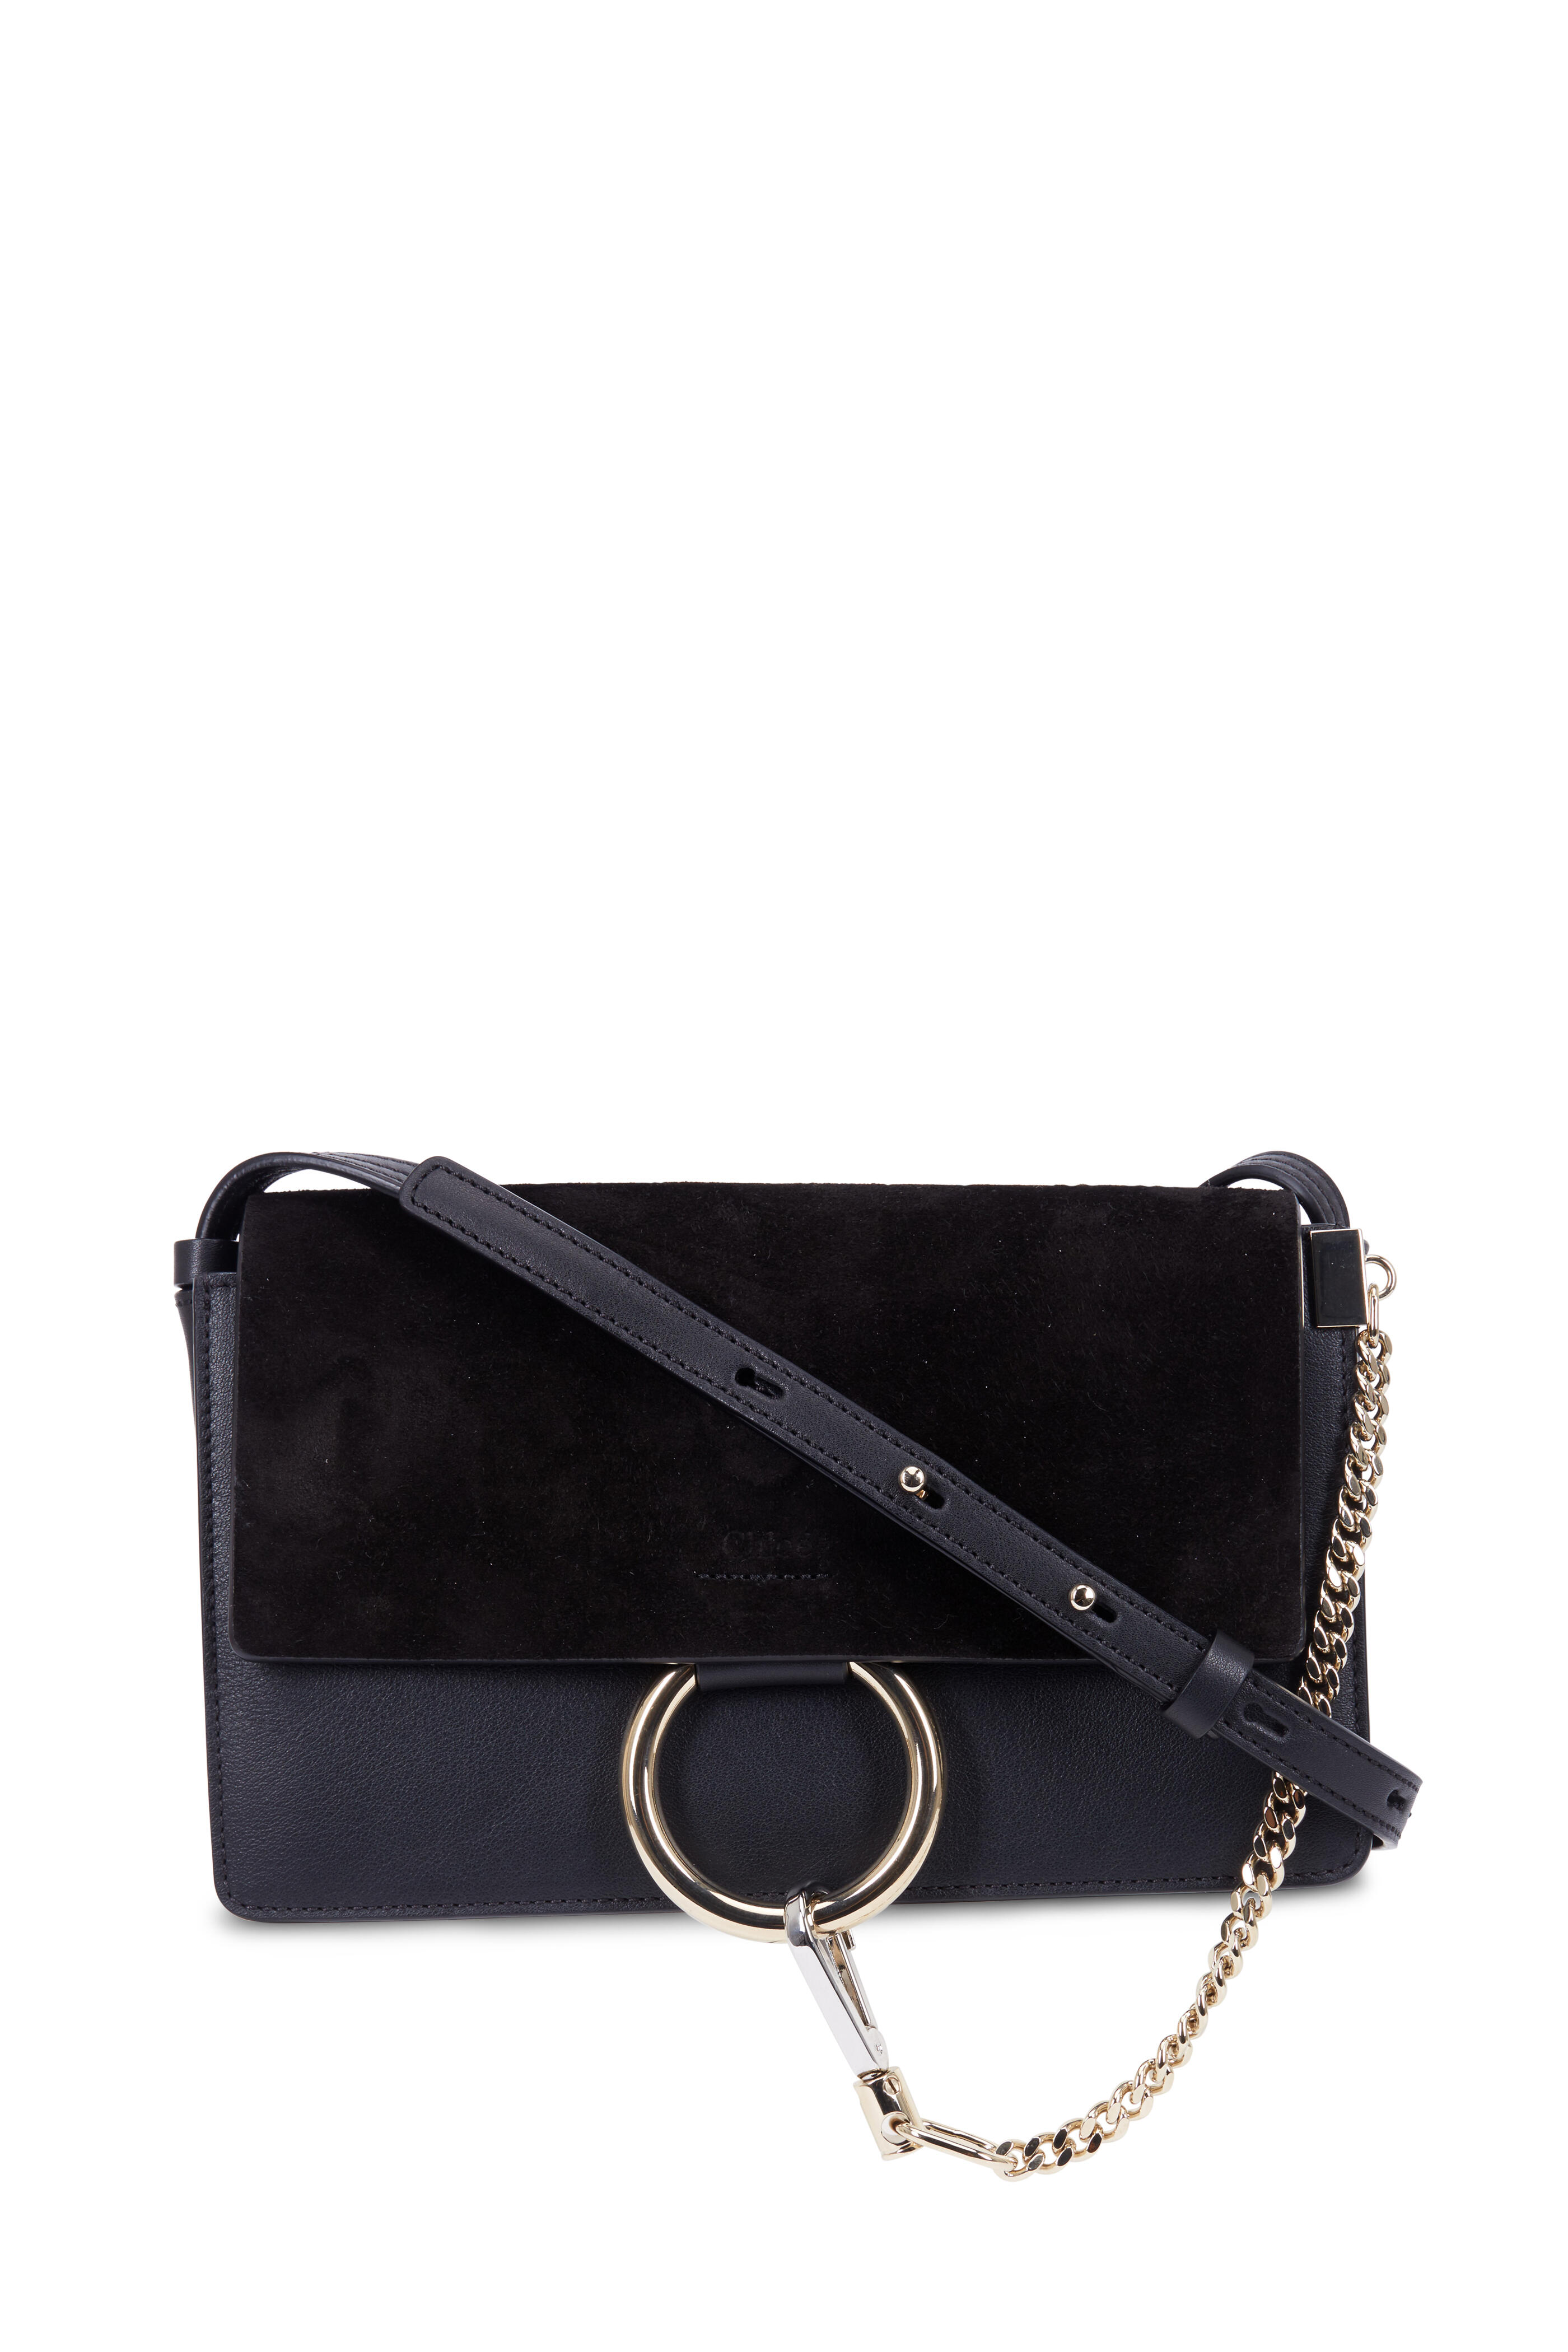 Chole Black Leather and Suede Medium Faye Shoulder Bag – STYLISHTOP